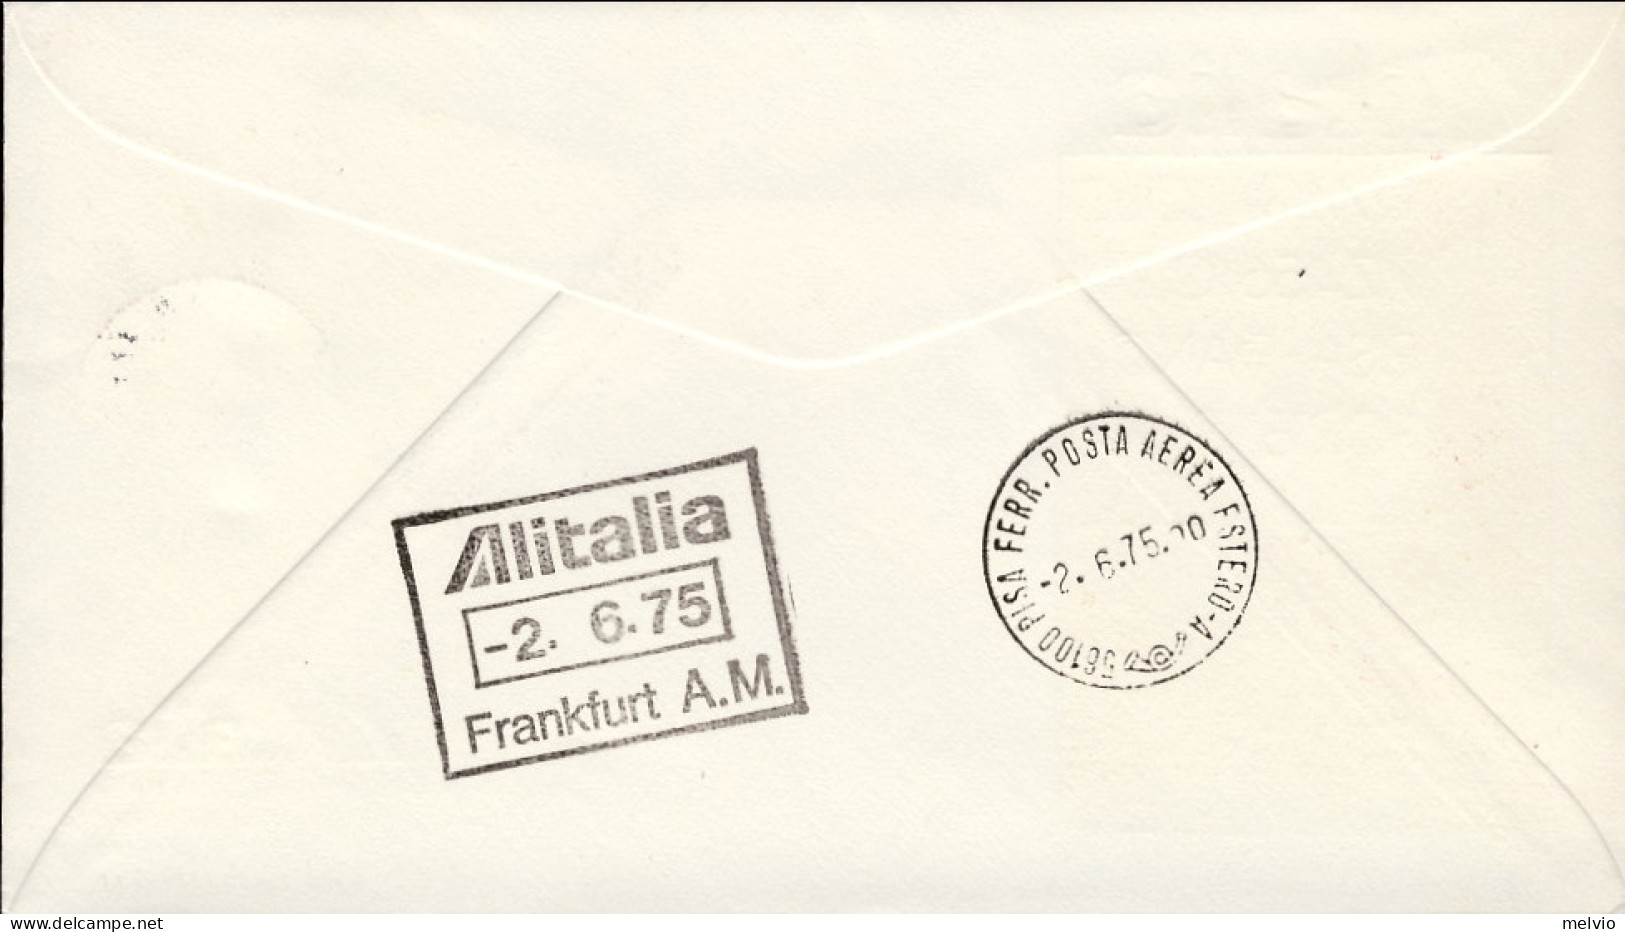 Vaticano-1975 Alitalia I^volo AZ 456 Pisa Francoforte Del 2 Giugno - Airmail